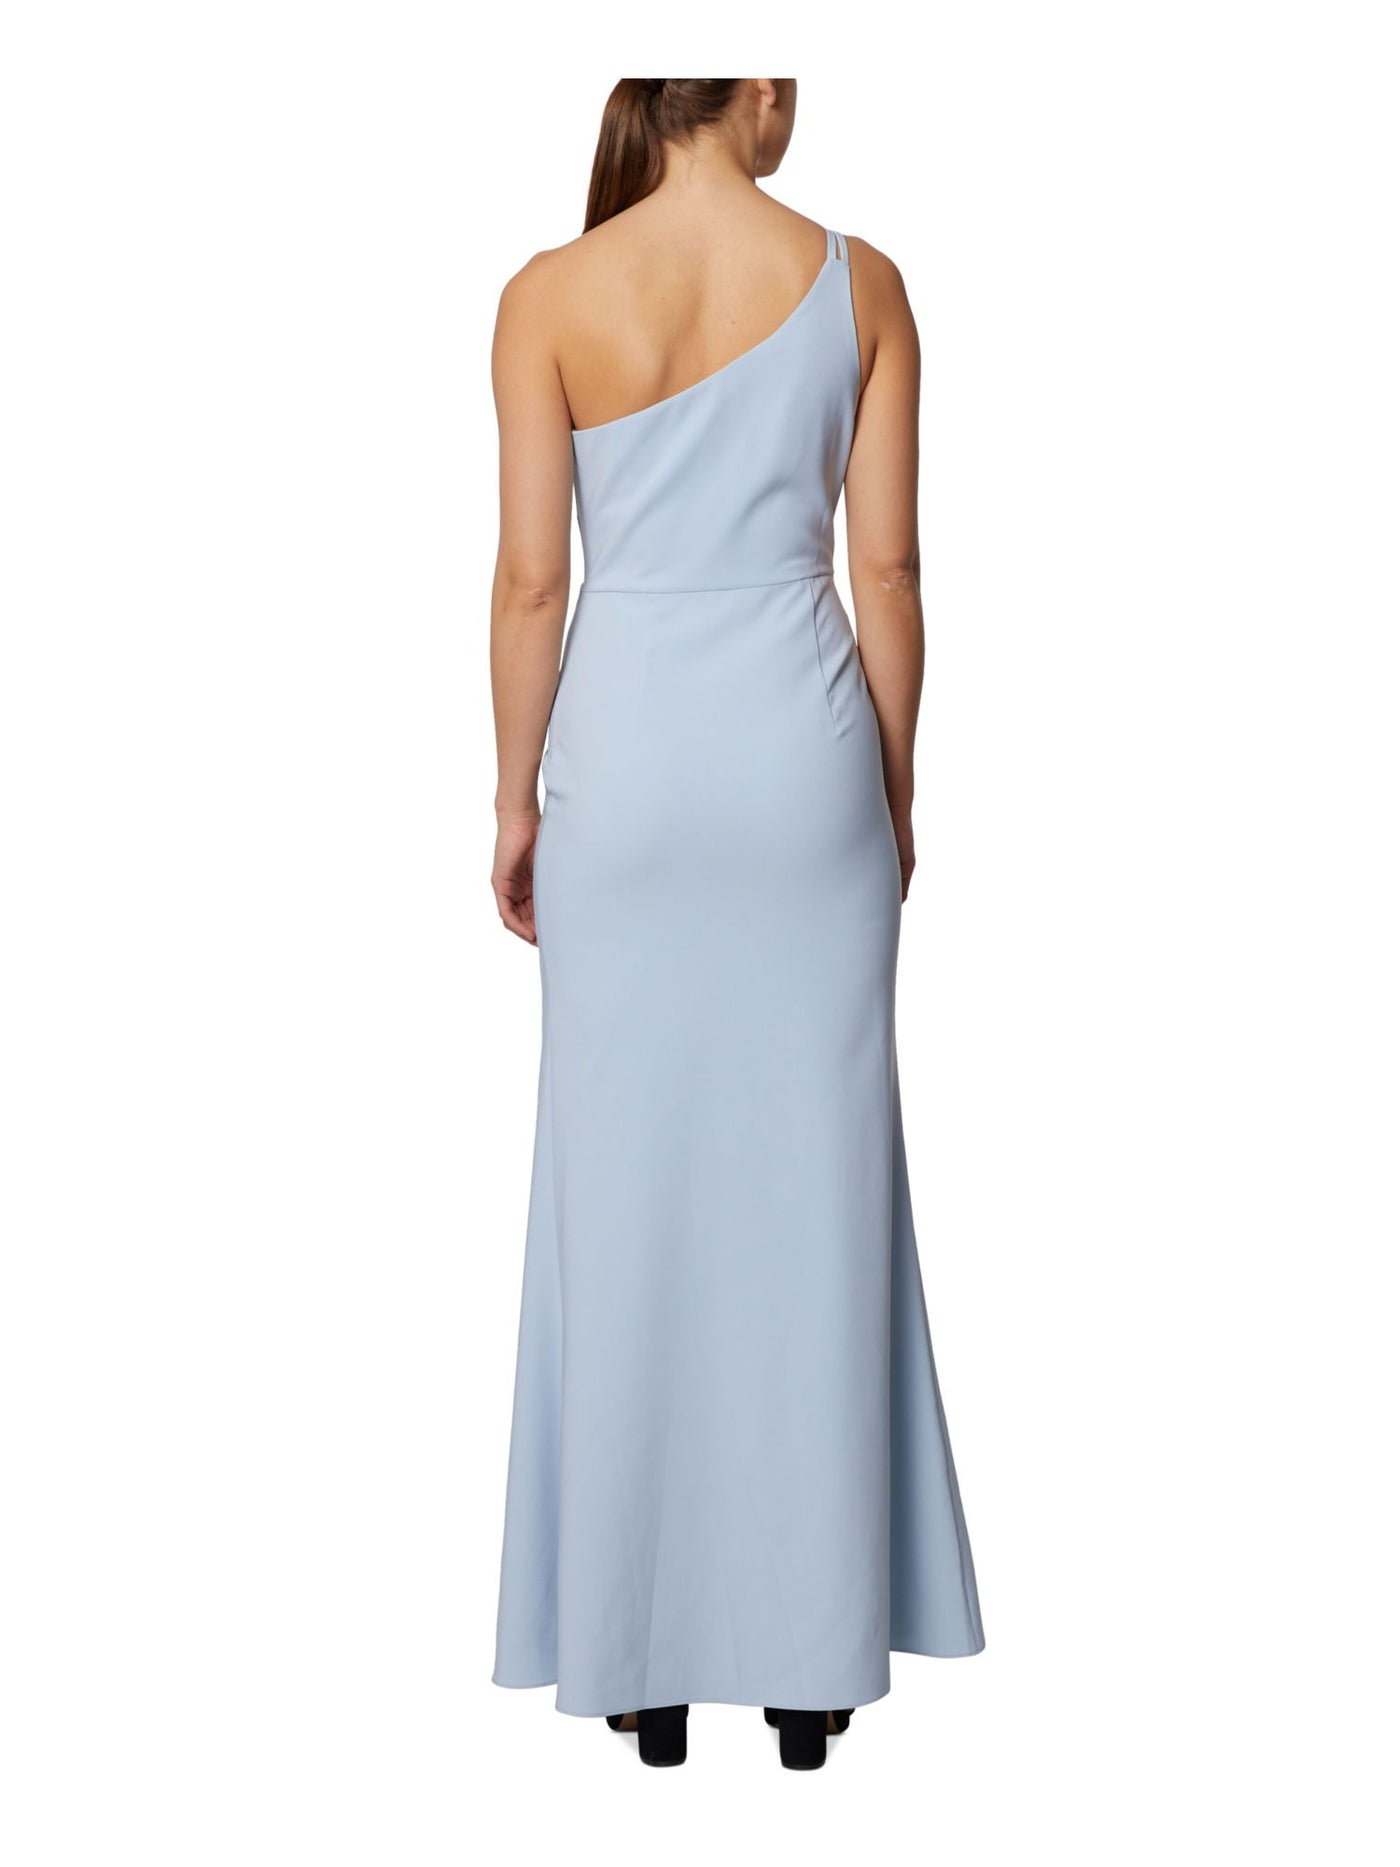 LAUNDRY Womens Light Blue Zippered Slitted Lined Sleeveless Asymmetrical Neckline Full-Length Formal Gown Dress 14